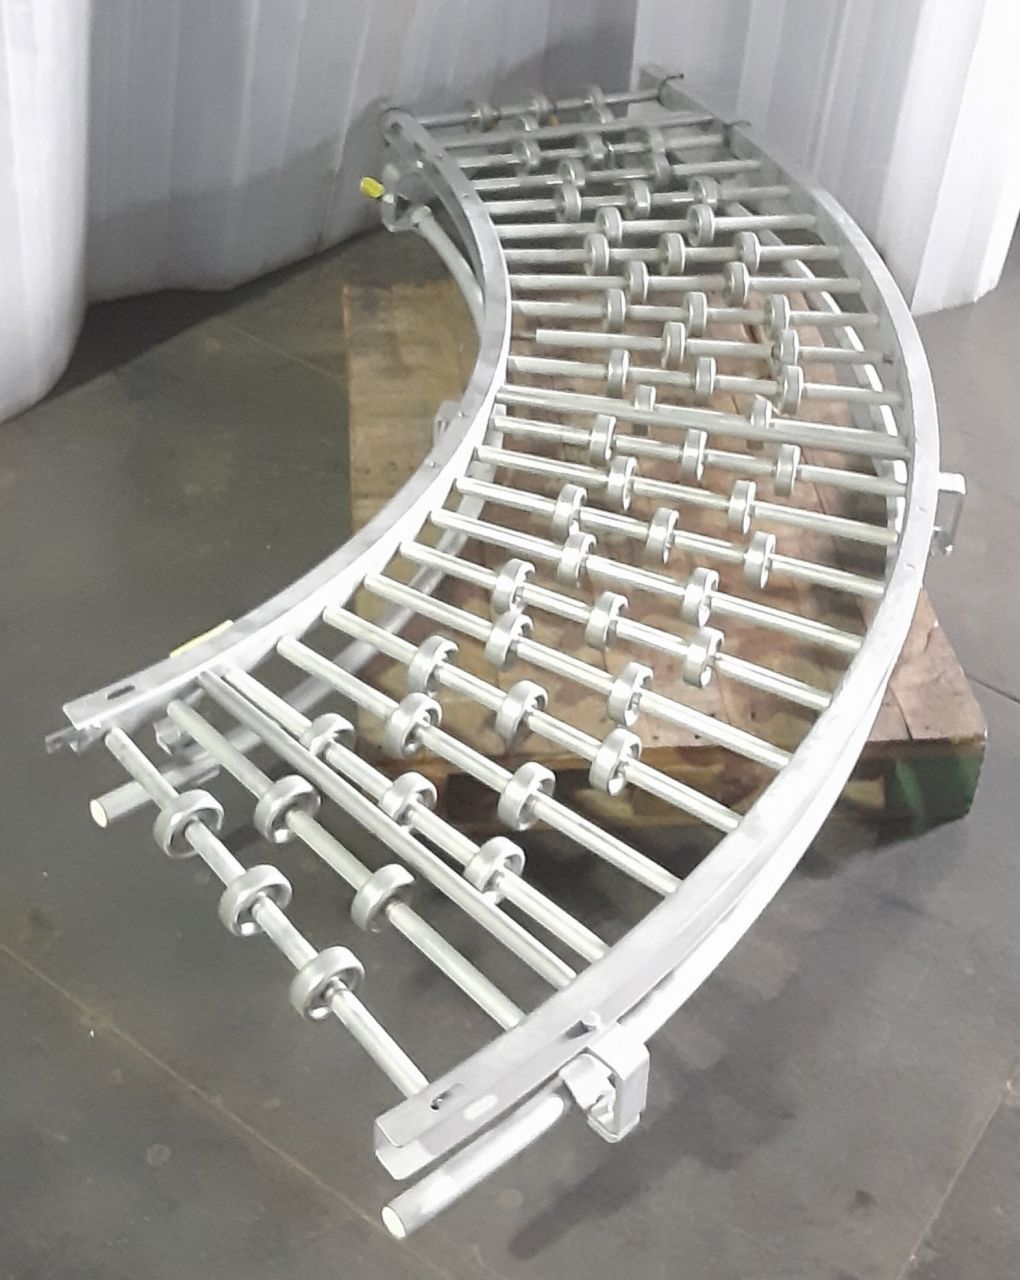 マキテック製 ローラーコンベヤ カーブ型 R外径およそ1550mm程度 makitech1-rollerconveyerr1550mm-9018